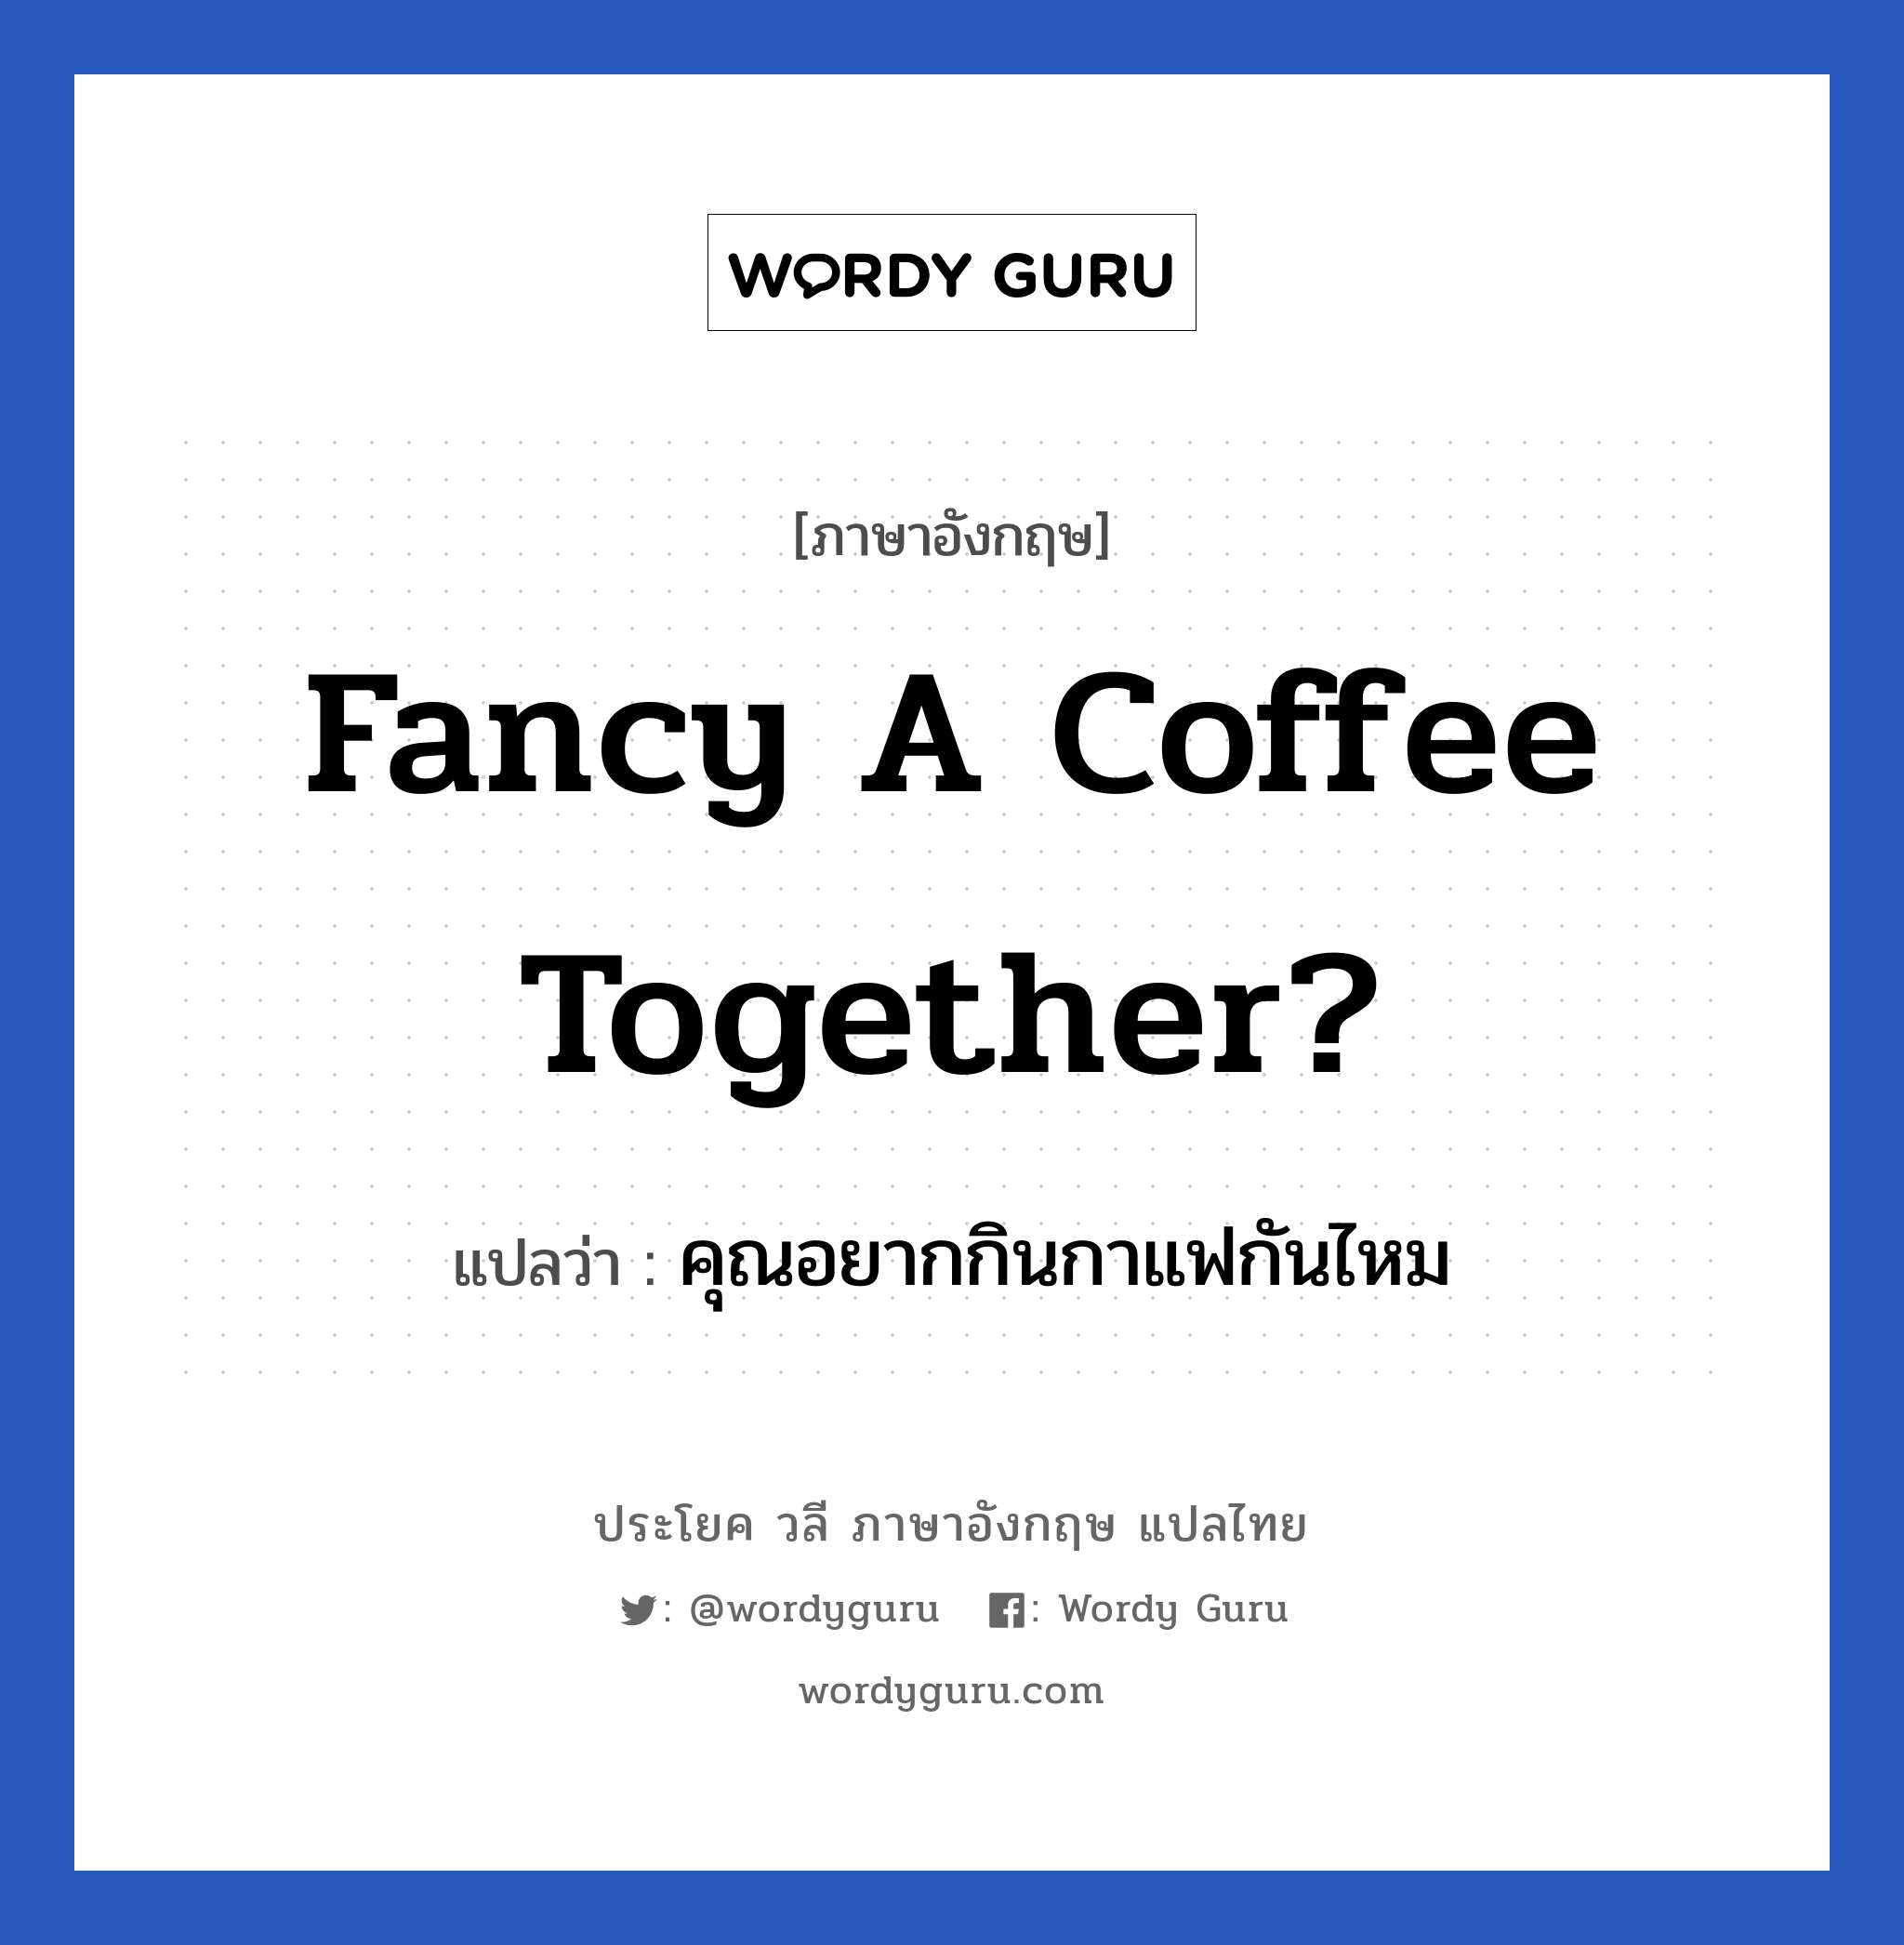 คุณอยากกินกาแฟกันไหม ภาษาอังกฤษ?, วลีภาษาอังกฤษ คุณอยากกินกาแฟกันไหม แปลว่า Fancy a coffee together?